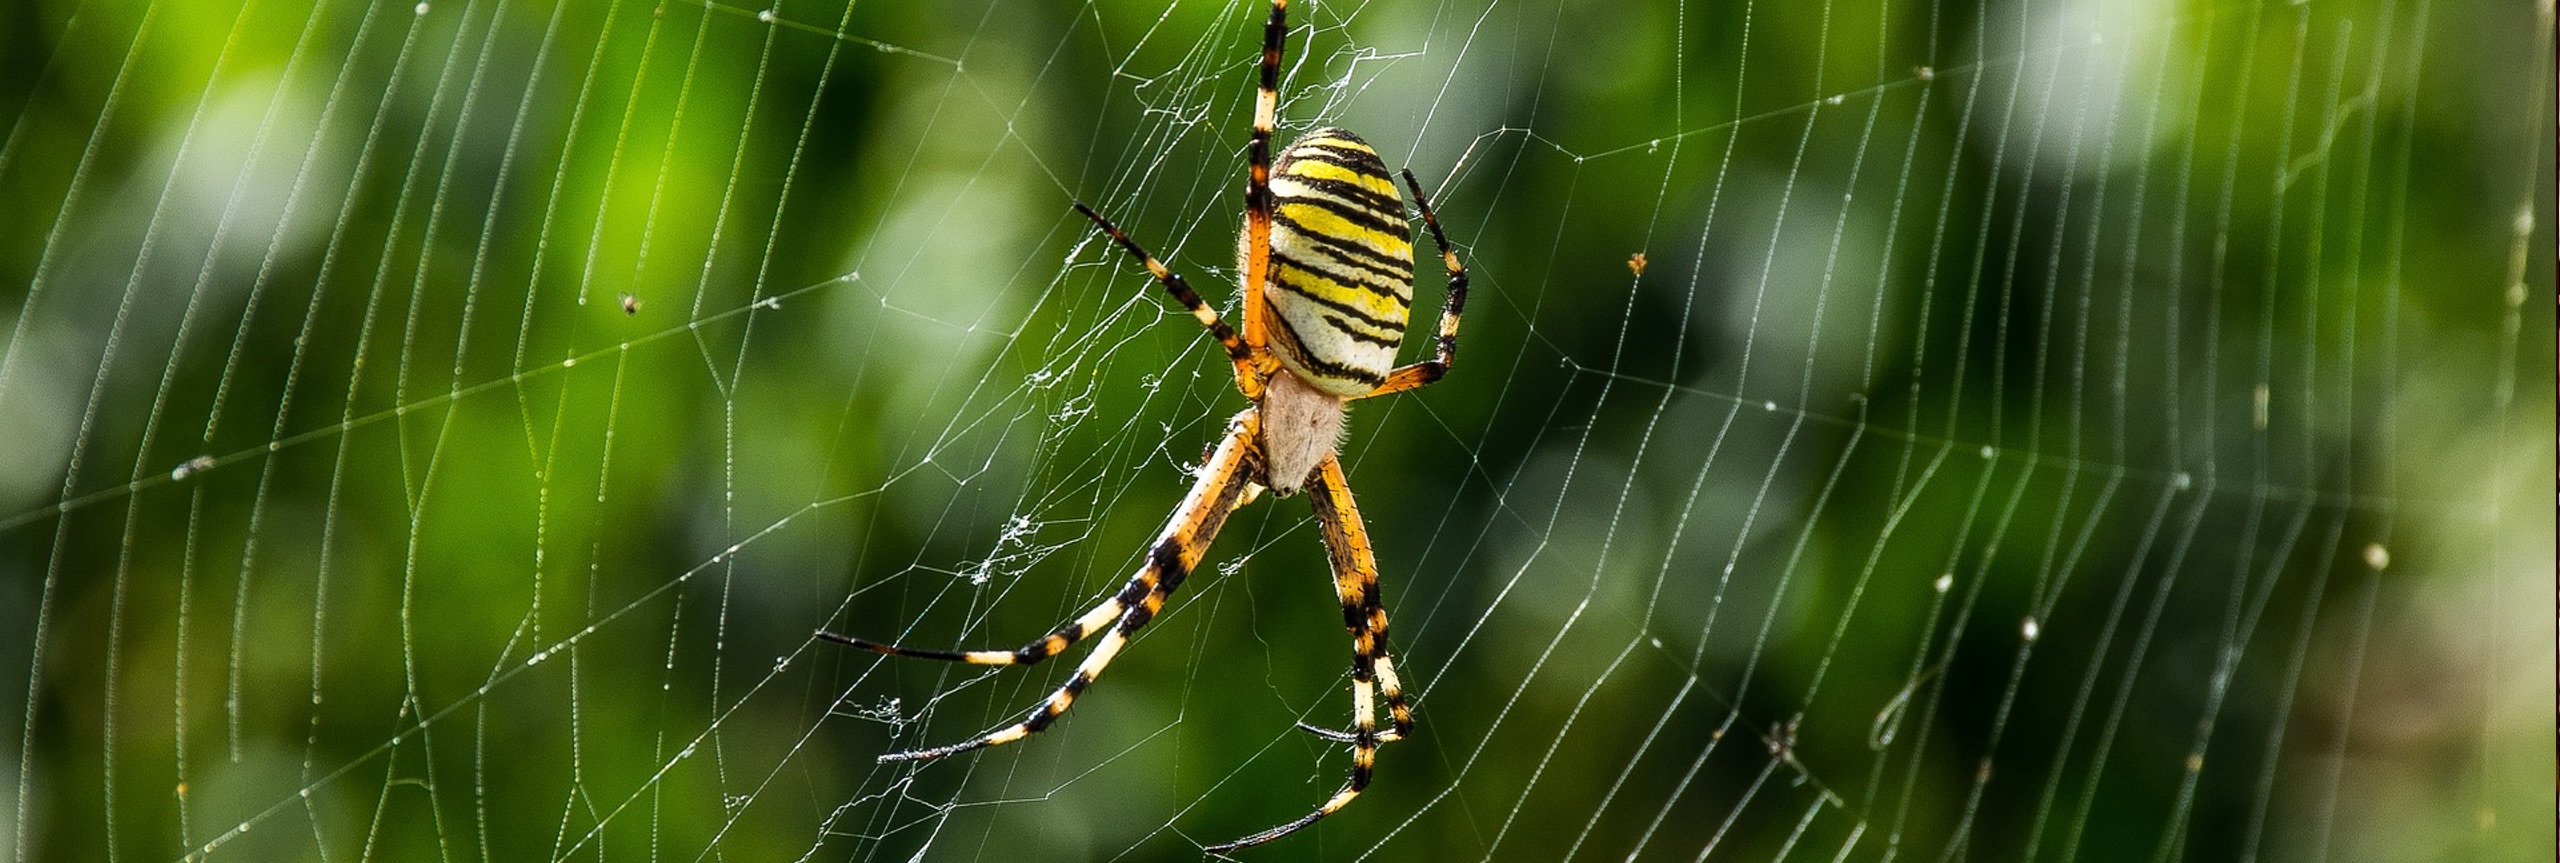 wespenspin in een spinnenweb in de natuur